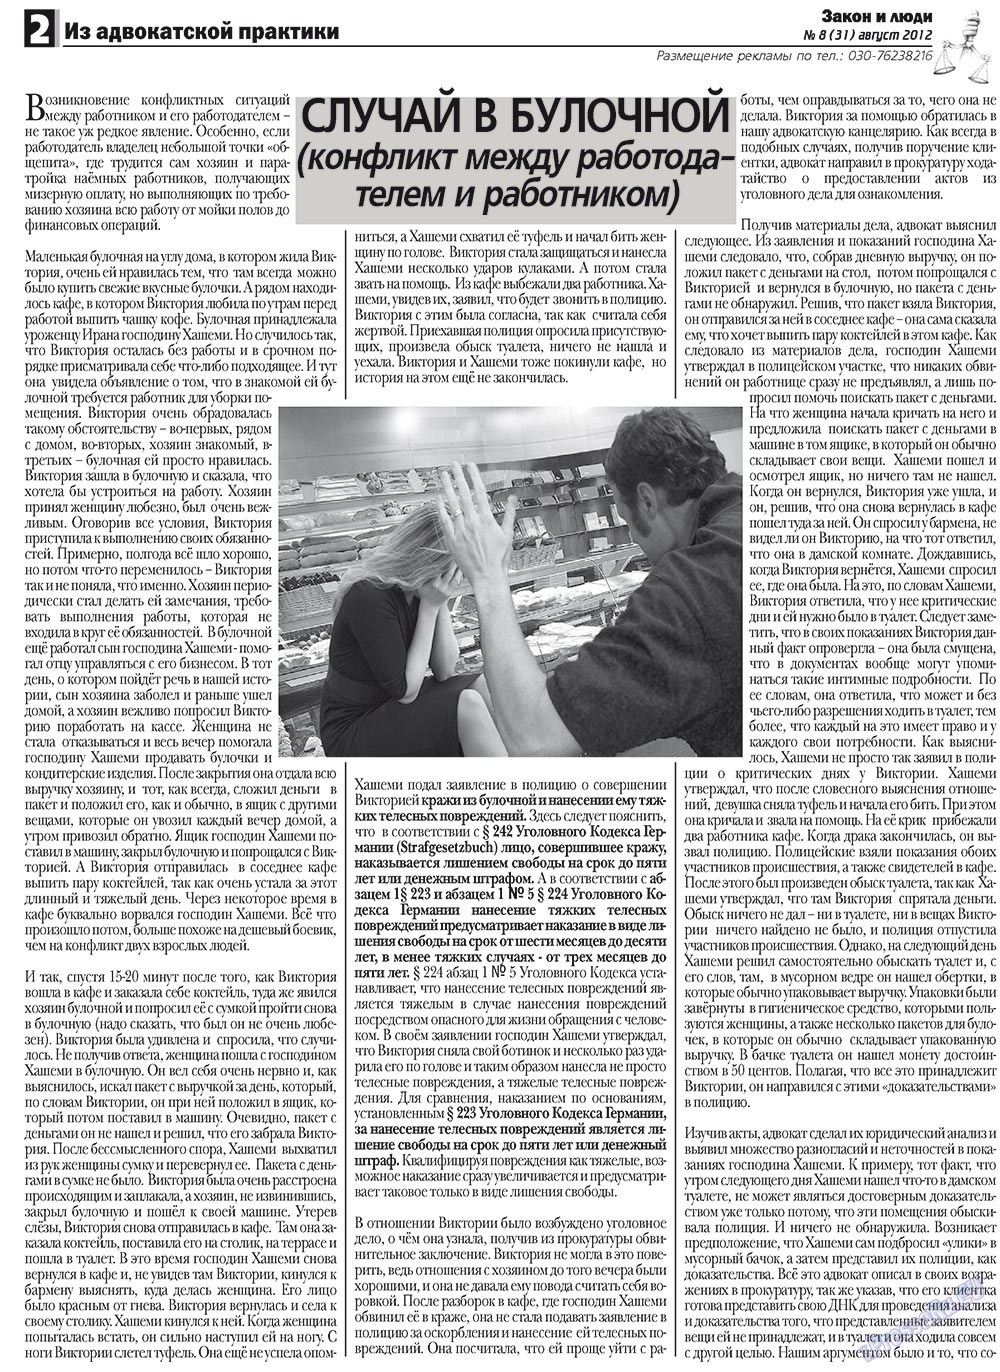 Закон и люди, газета. 2012 №8 стр.2